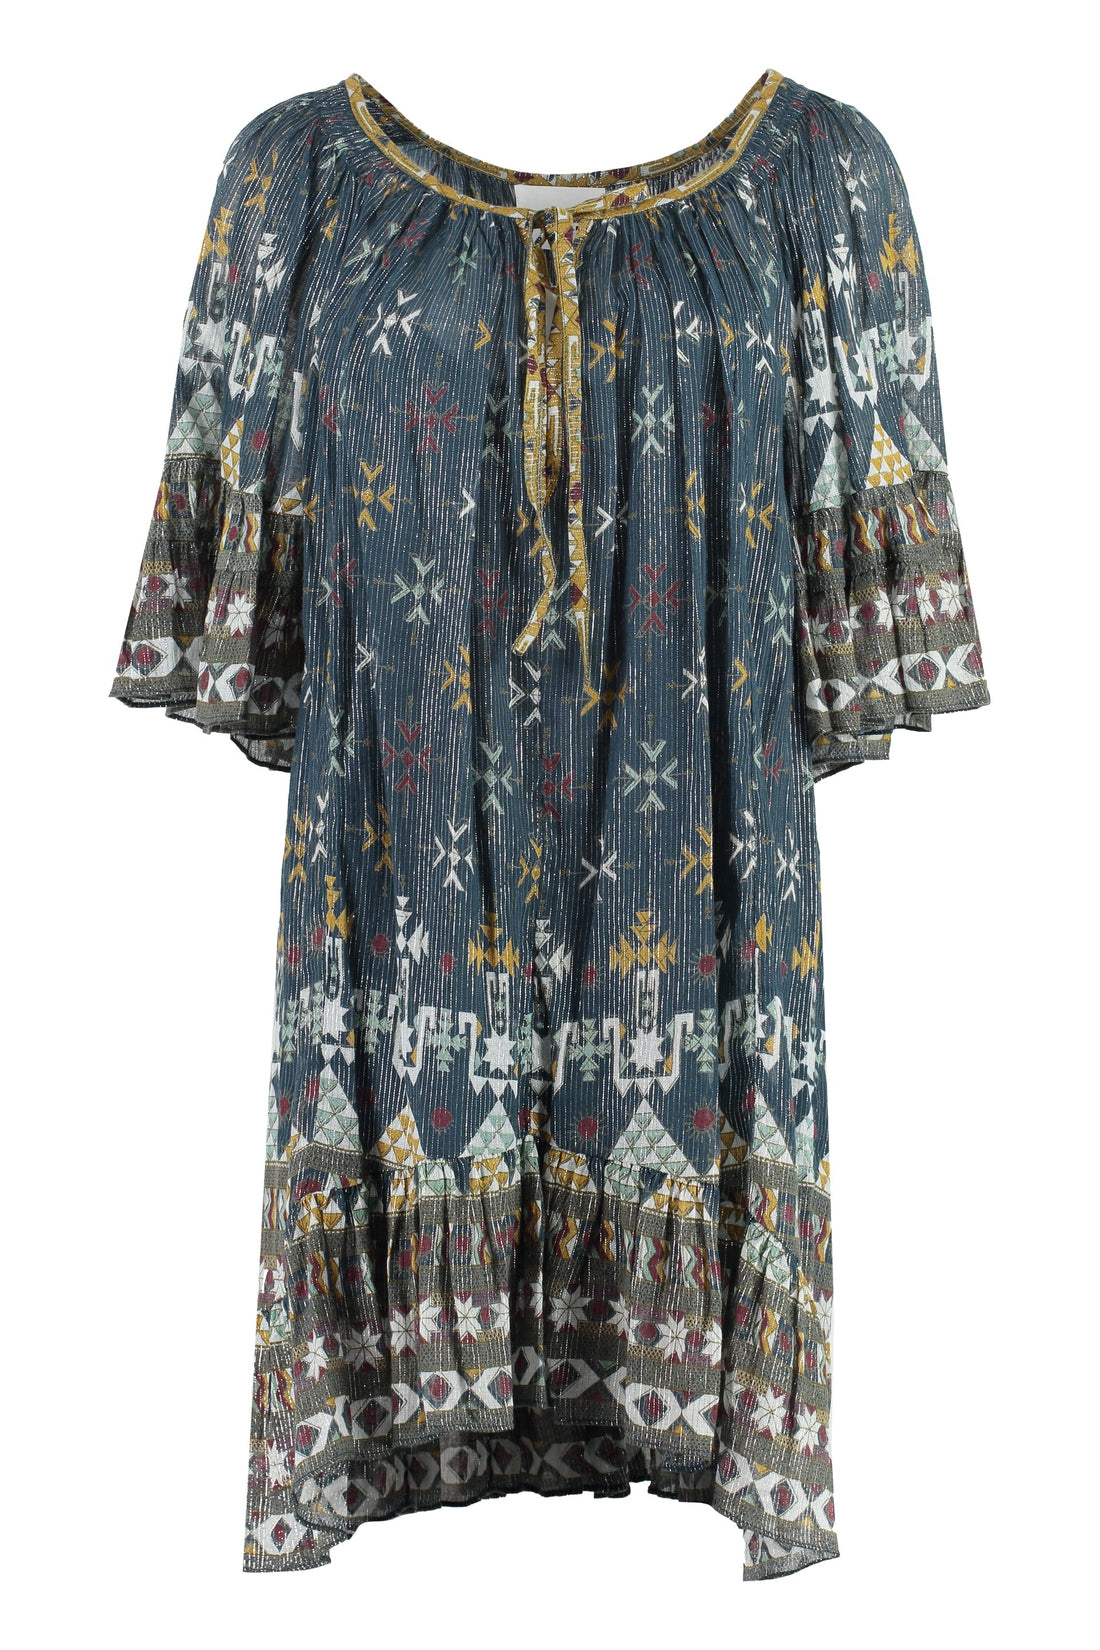 Isabel Marant Étoile-OUTLET-SALE-Loane printed cotton dress-ARCHIVIST